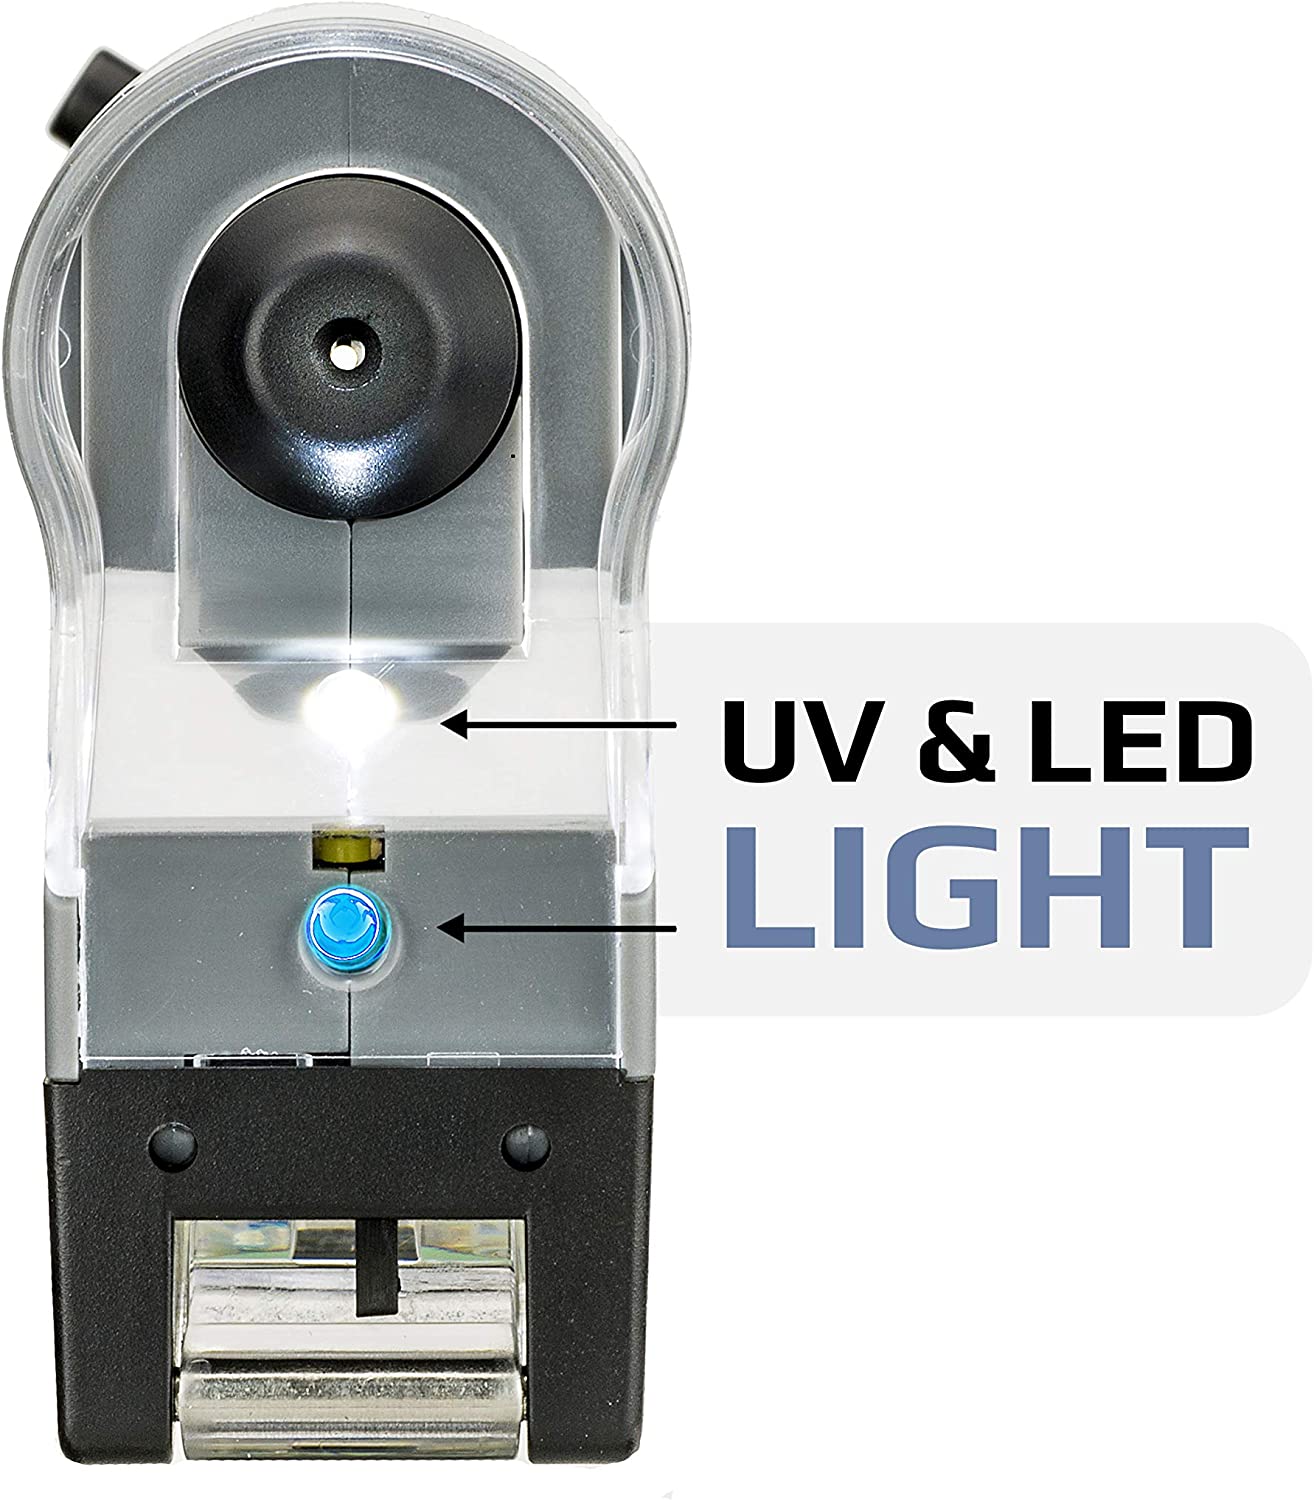 Kính hiển vi bỏ túi cao cấp MicroFlip MP-250 (Phóng đại 100x -250x) có đèn tia cực tím UV. MicroFlip 100x-250x LED UV Pocket Microscope with Smartphone Clip - Hàng chính hãng